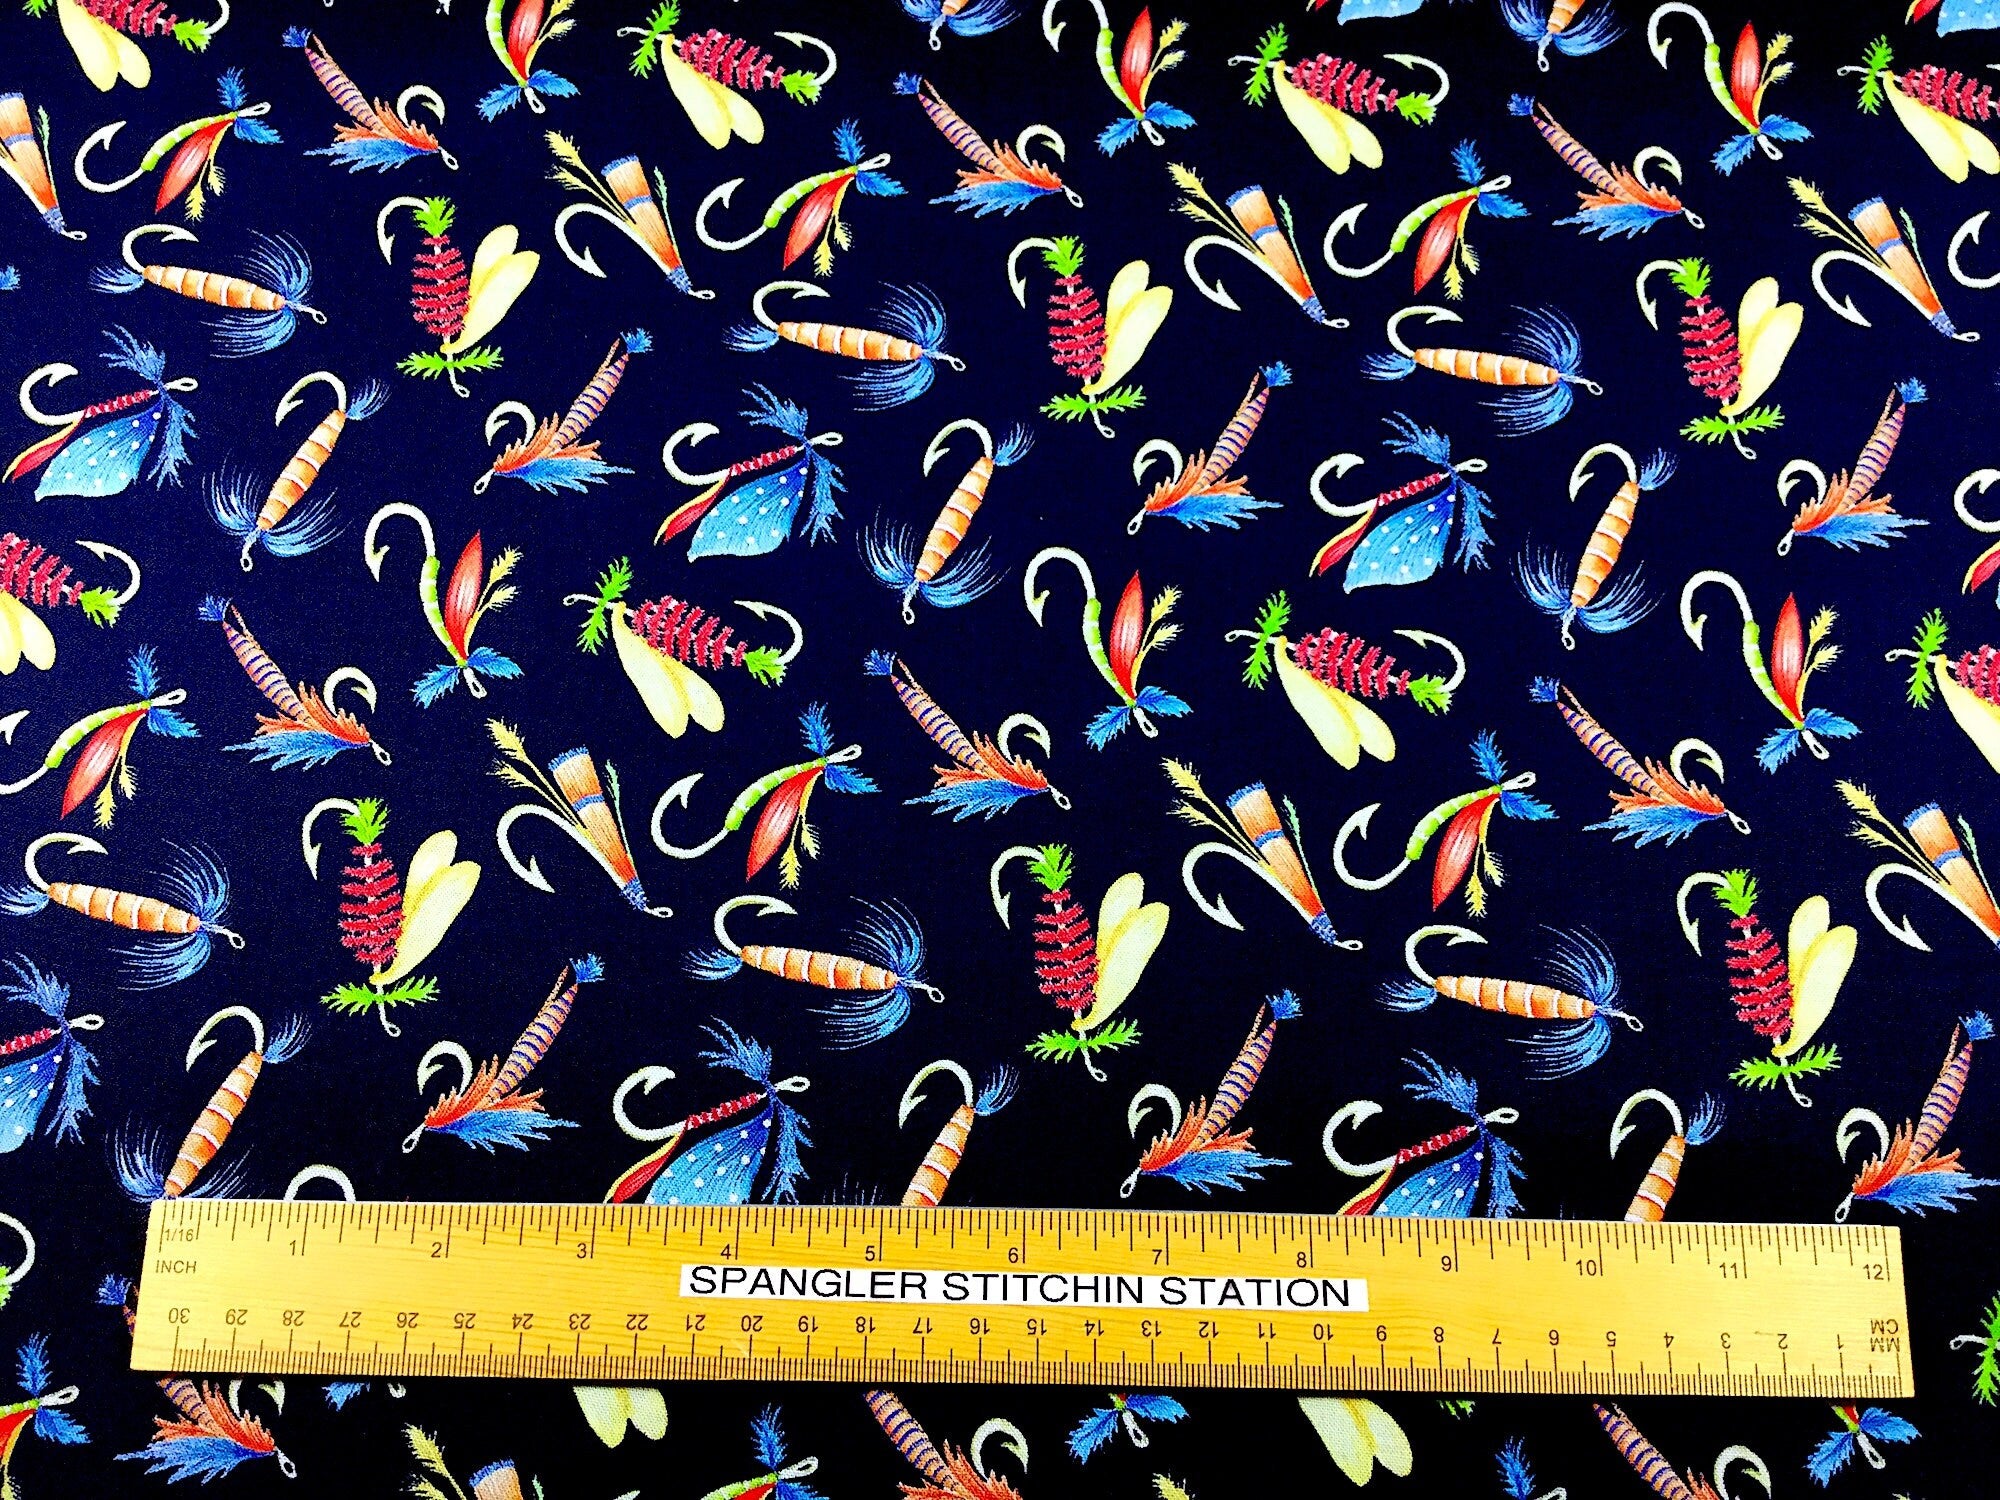 Keep it Reel - Fly Fishing Fabric - Fishing Fabric - Cotton Fabric Quilting Fabric - Kanvas Studio - FISH-07